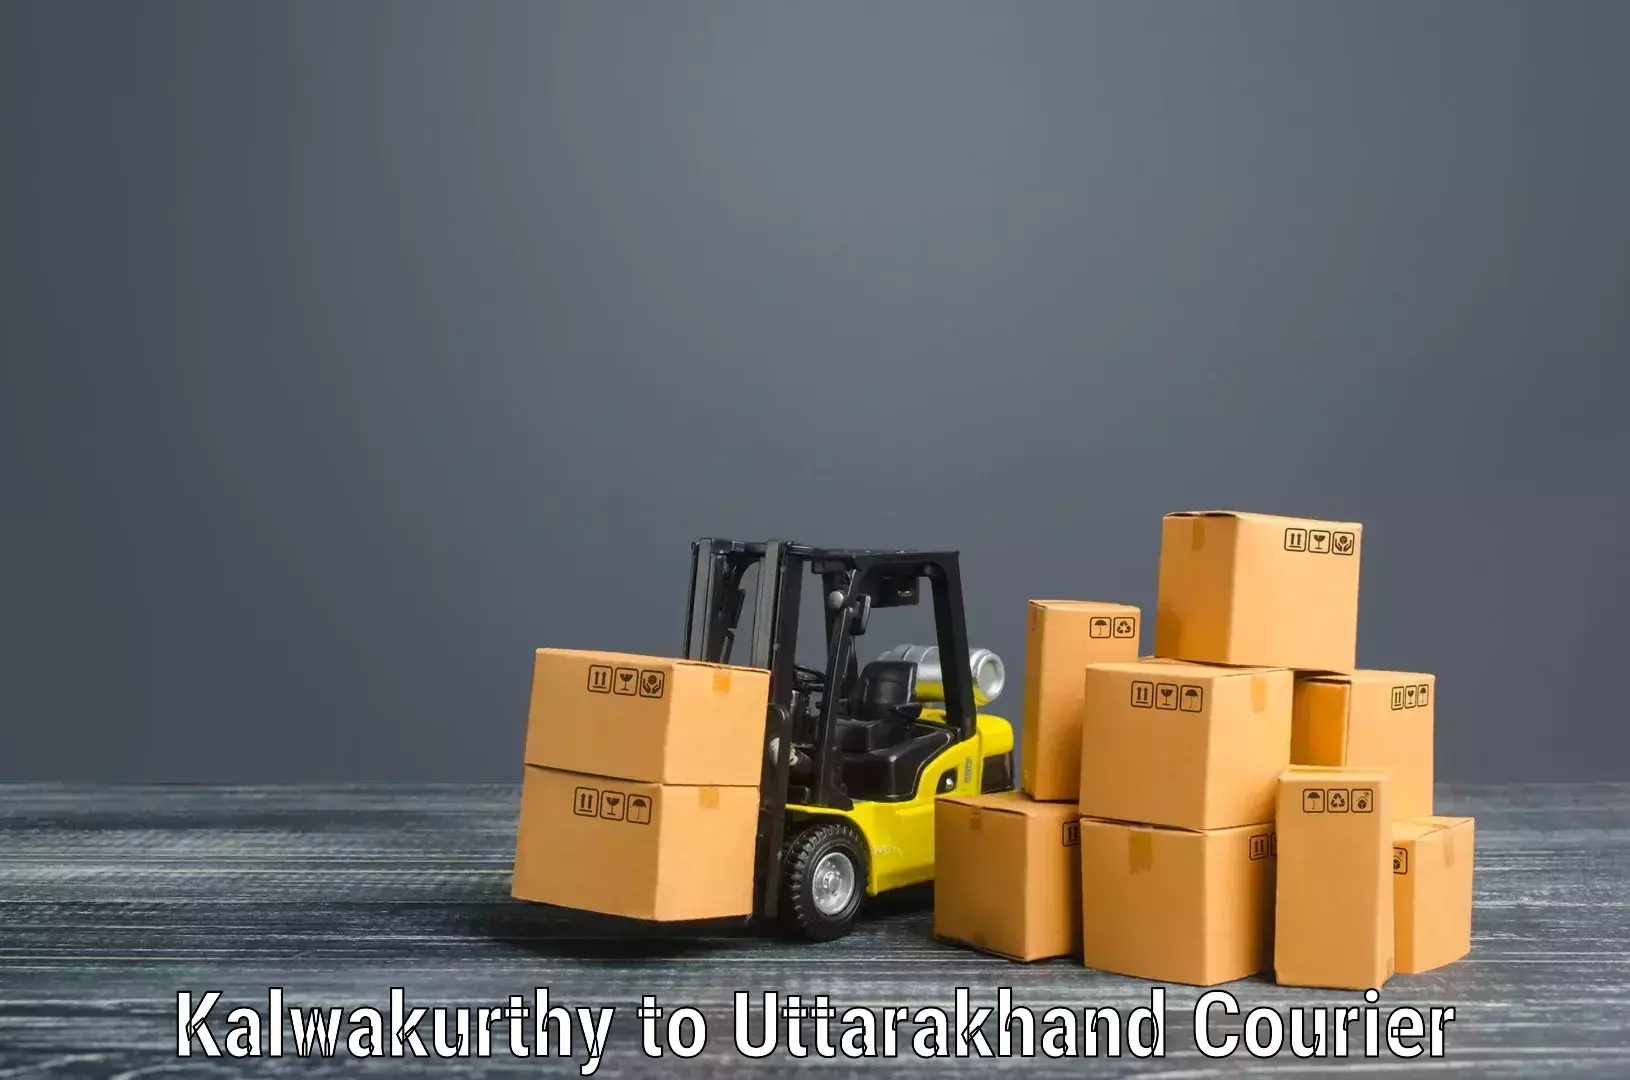 Furniture moving services in Kalwakurthy to Haldwani